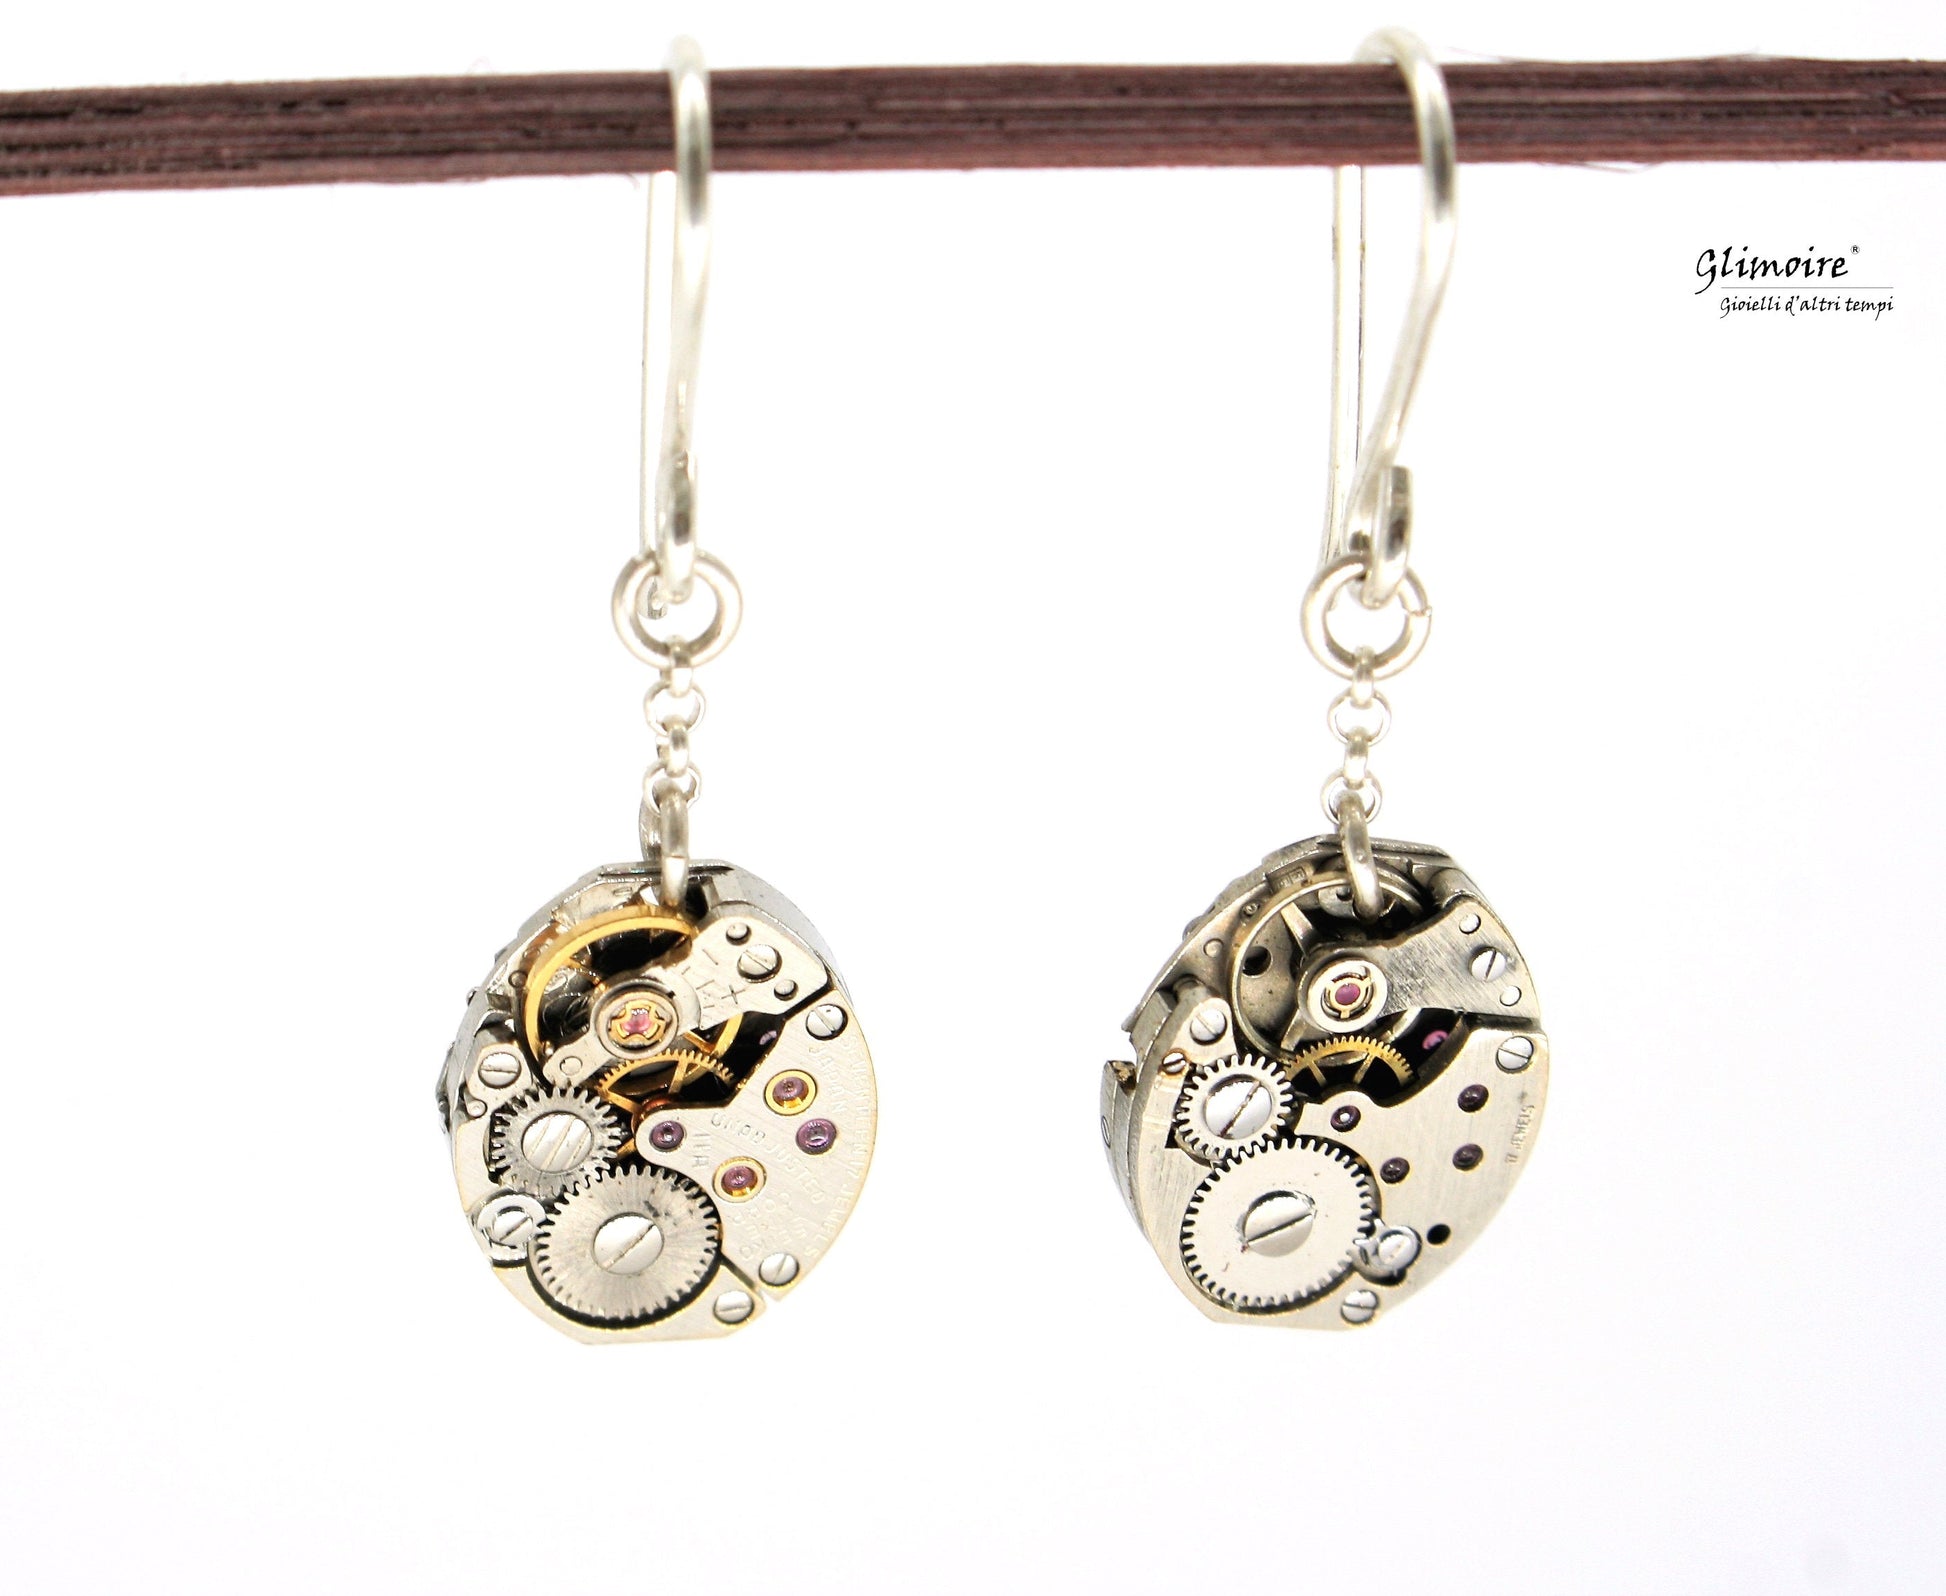 Coppia di orecchini pendenti in argento con meccanismi di orologi seiko con rubini a vista art.227 - Glimoire